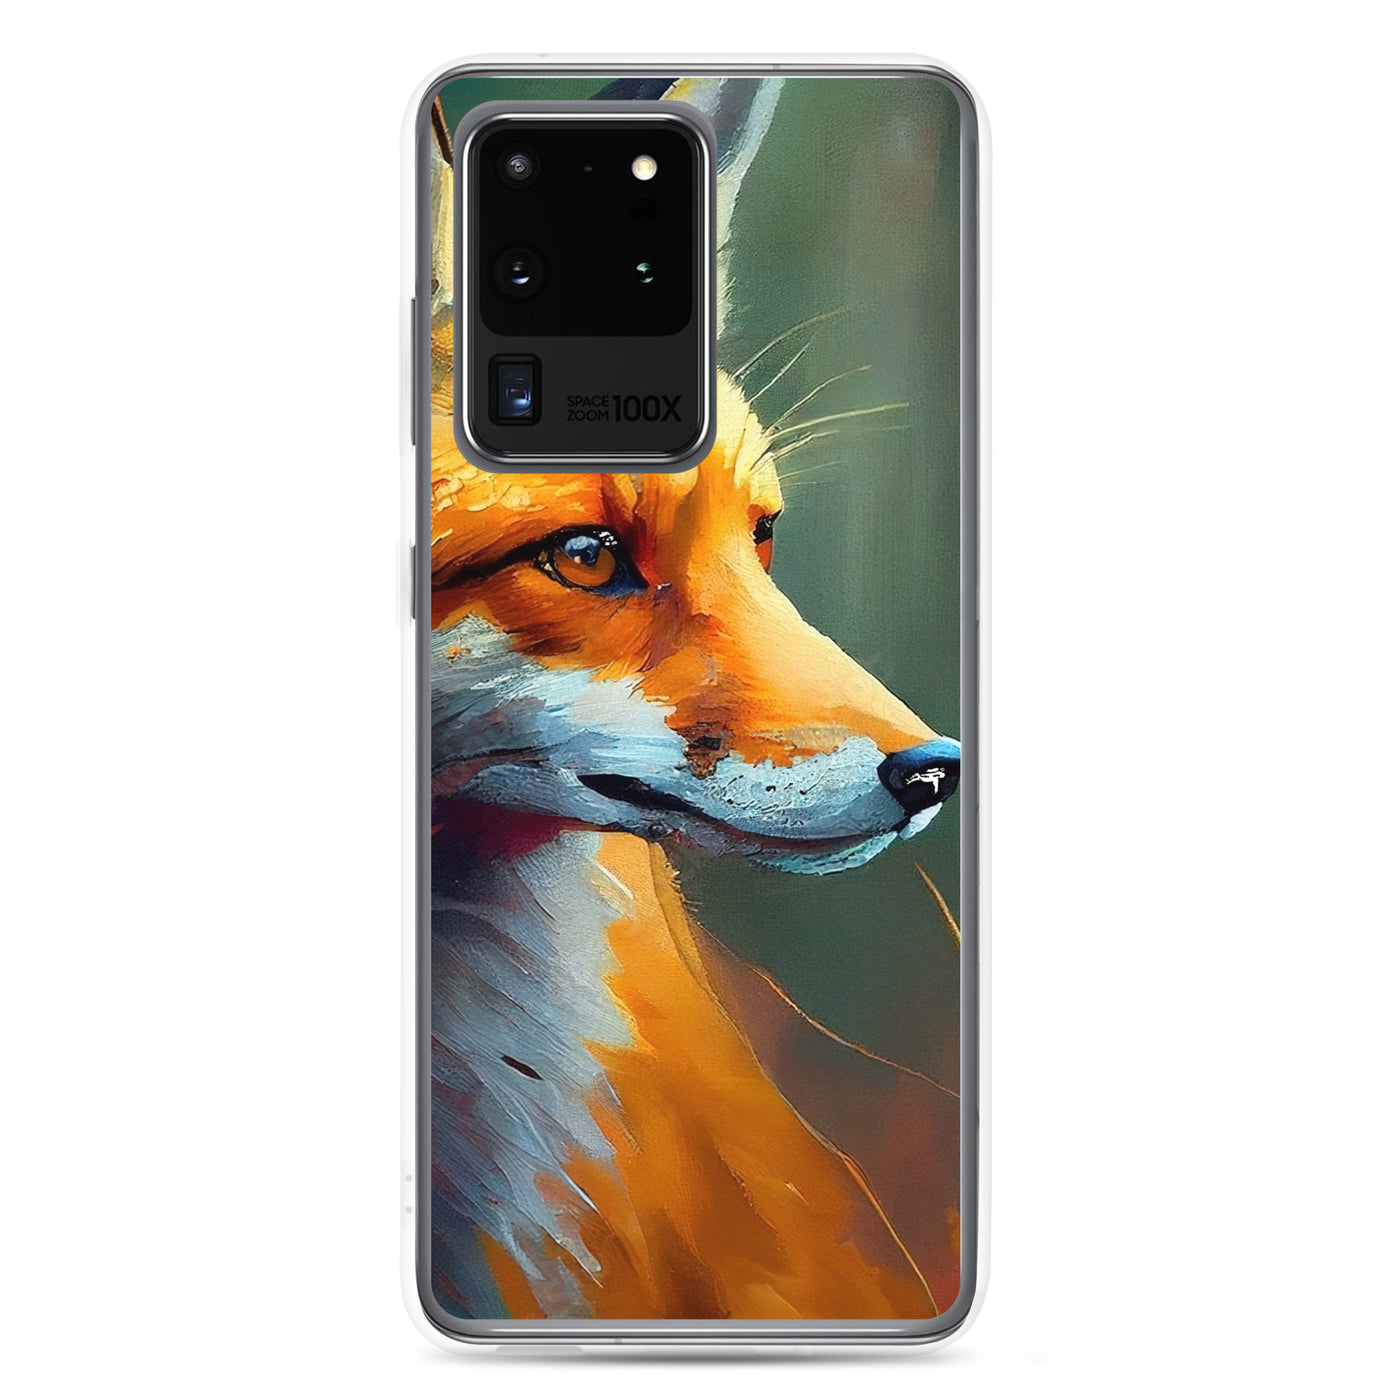 Fuchs - Ölmalerei - Schönes Kunstwerk - Samsung Schutzhülle (durchsichtig) camping xxx Samsung Galaxy S20 Ultra